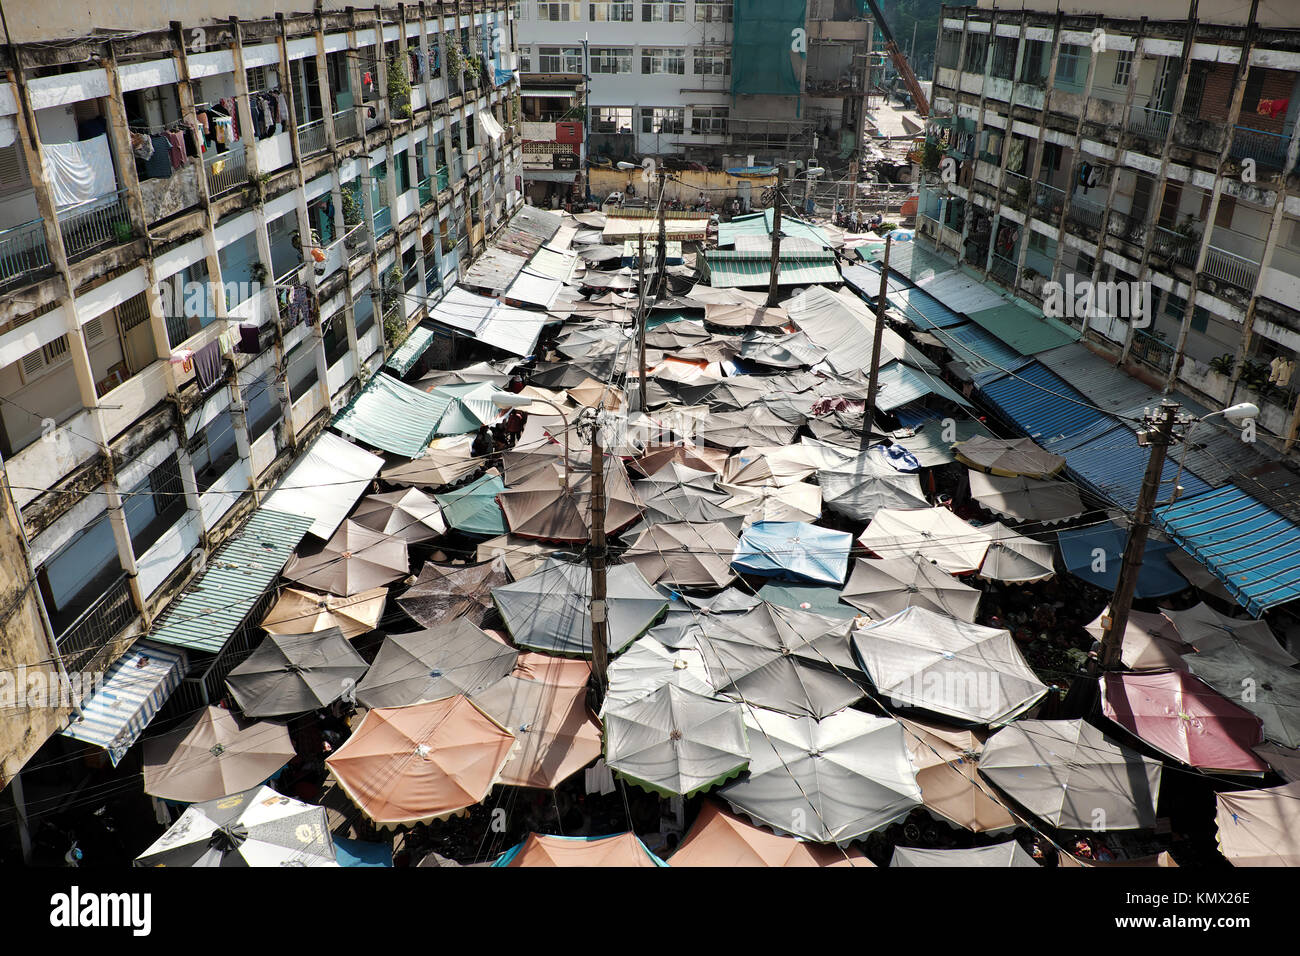 Panorámicas increíbles vistas desde lo alto del mercado al aire libre entre edificio antiguo, el mercado al aire libre con grupo de sombrilla hacer impresión de escena en el día, Vietnam Foto de stock